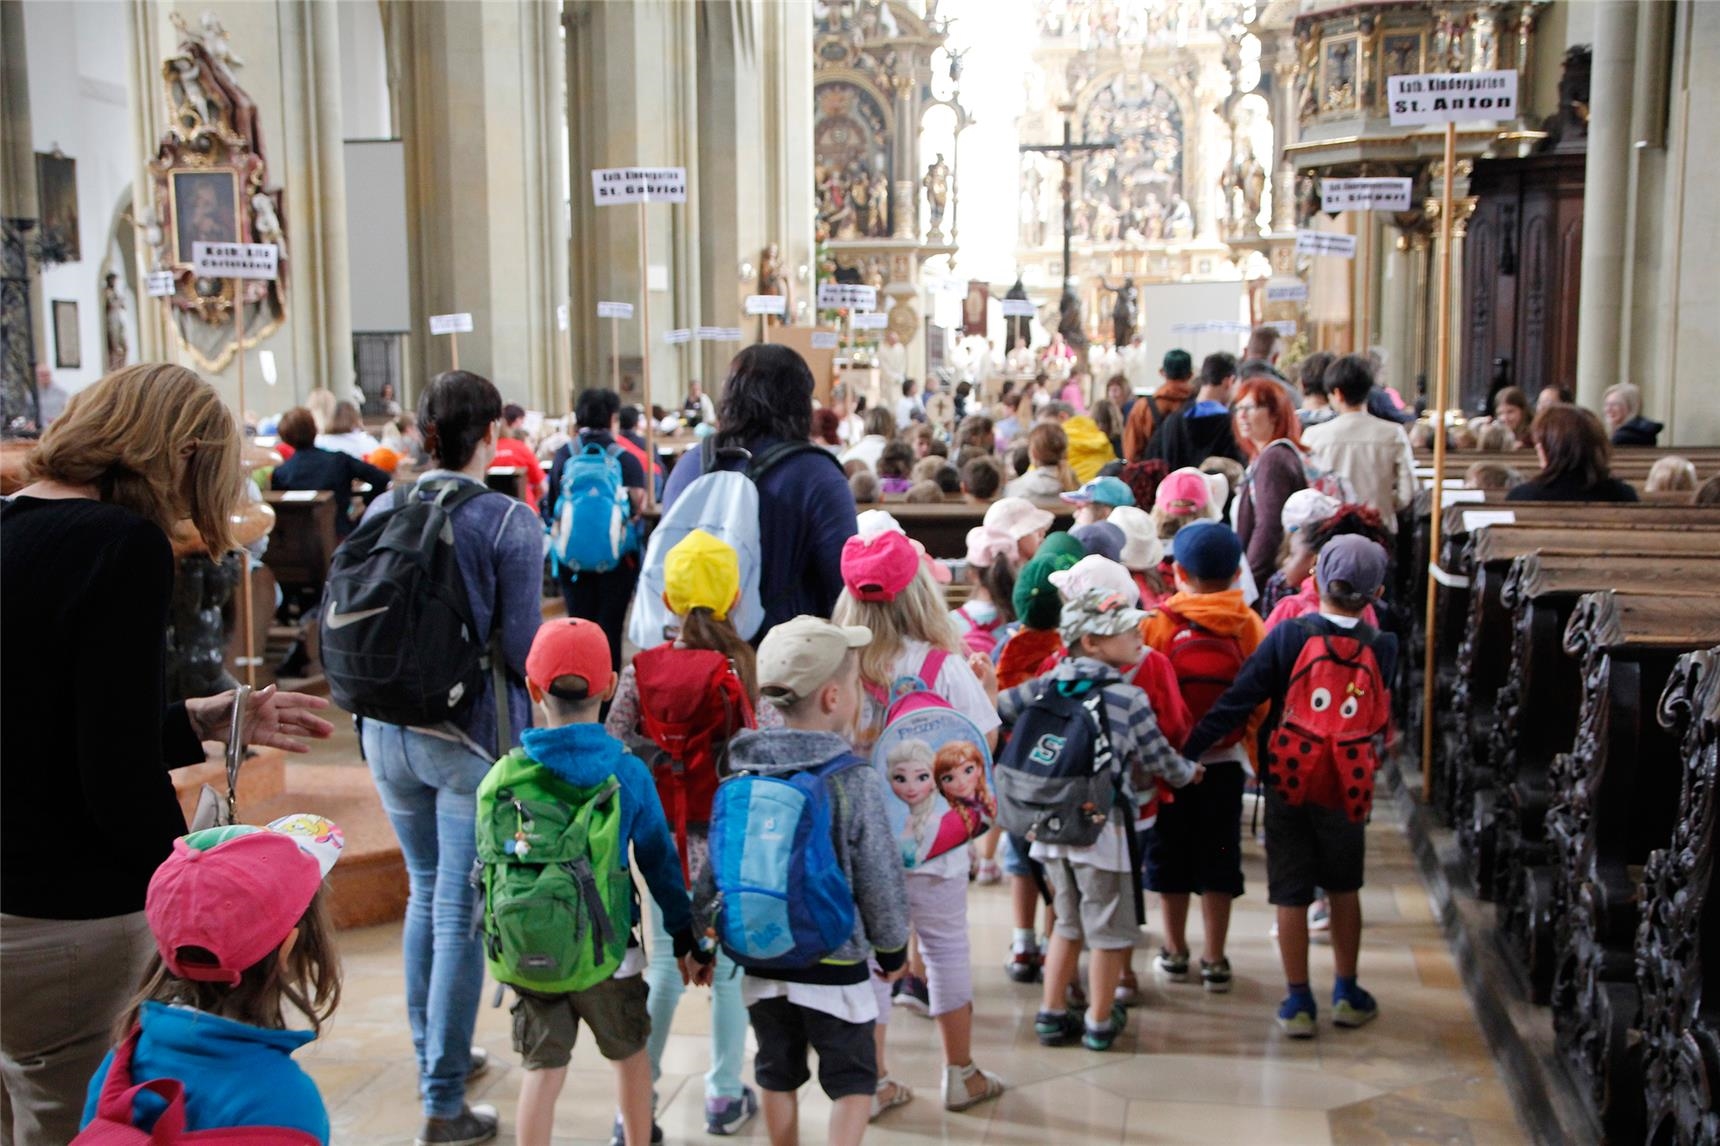 Knapp 600 Kinder aus katholischen Kindertageseinrichtungen feierten mit ihren Erzieherinnen den Kinderwallfahrtsgottesdienst. (Bernhard Gattner)